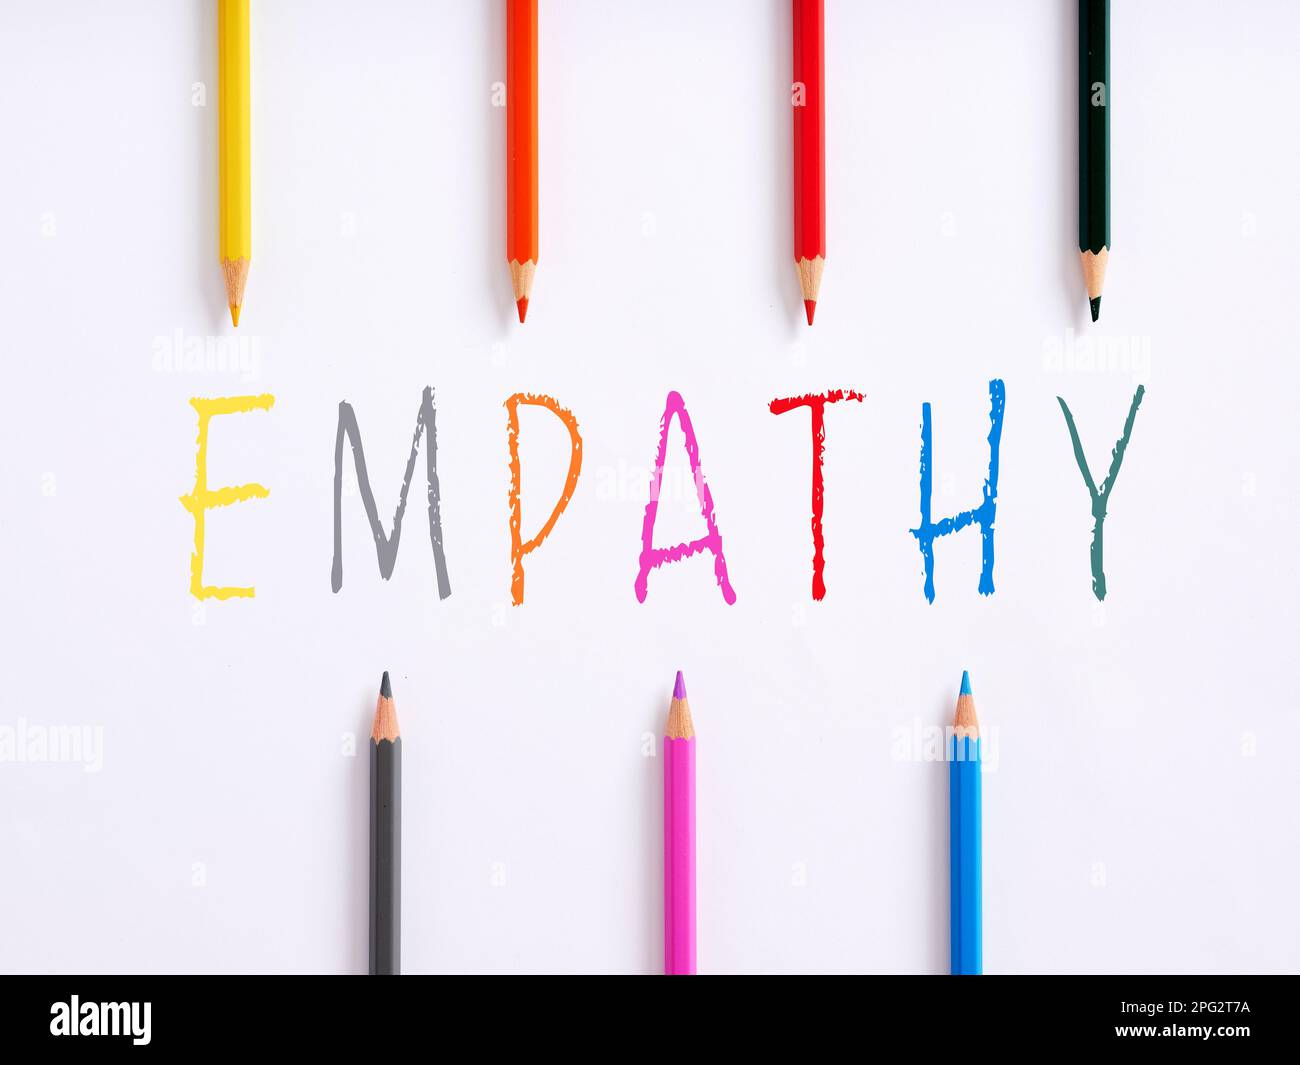 La parola empatia e pastelli colorati su sfondo bianco. Comprensione emotiva, comprensione e concetti di compassione. Relazione sociale personale. Foto Stock